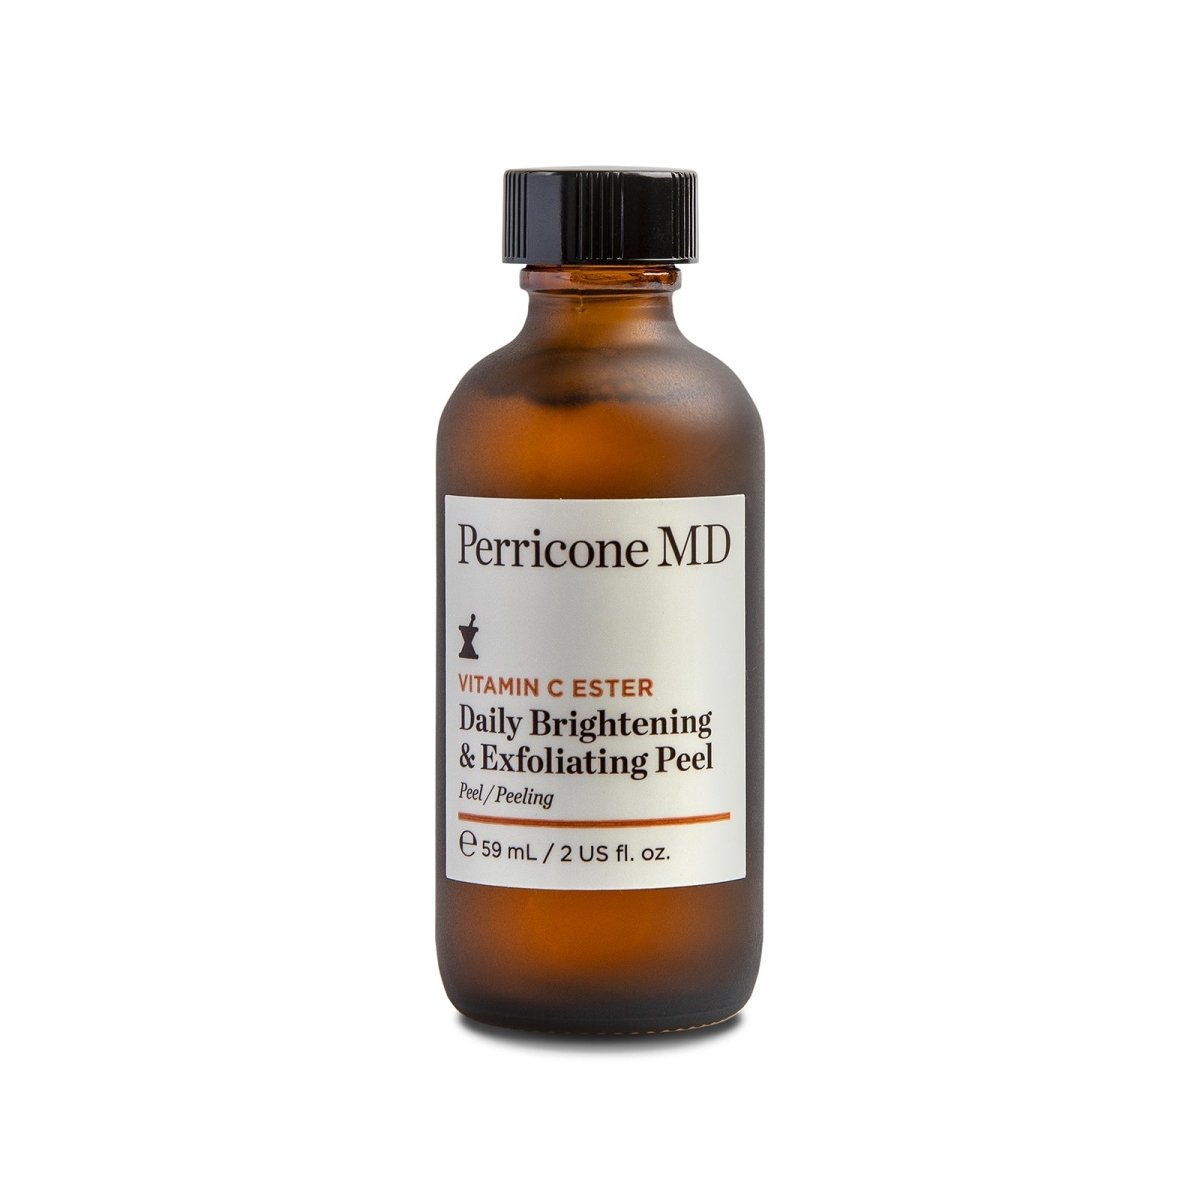 Perricone MD Vitamin C Ester Daily Brightening & Exfoliating Peel - SkincareEssentials